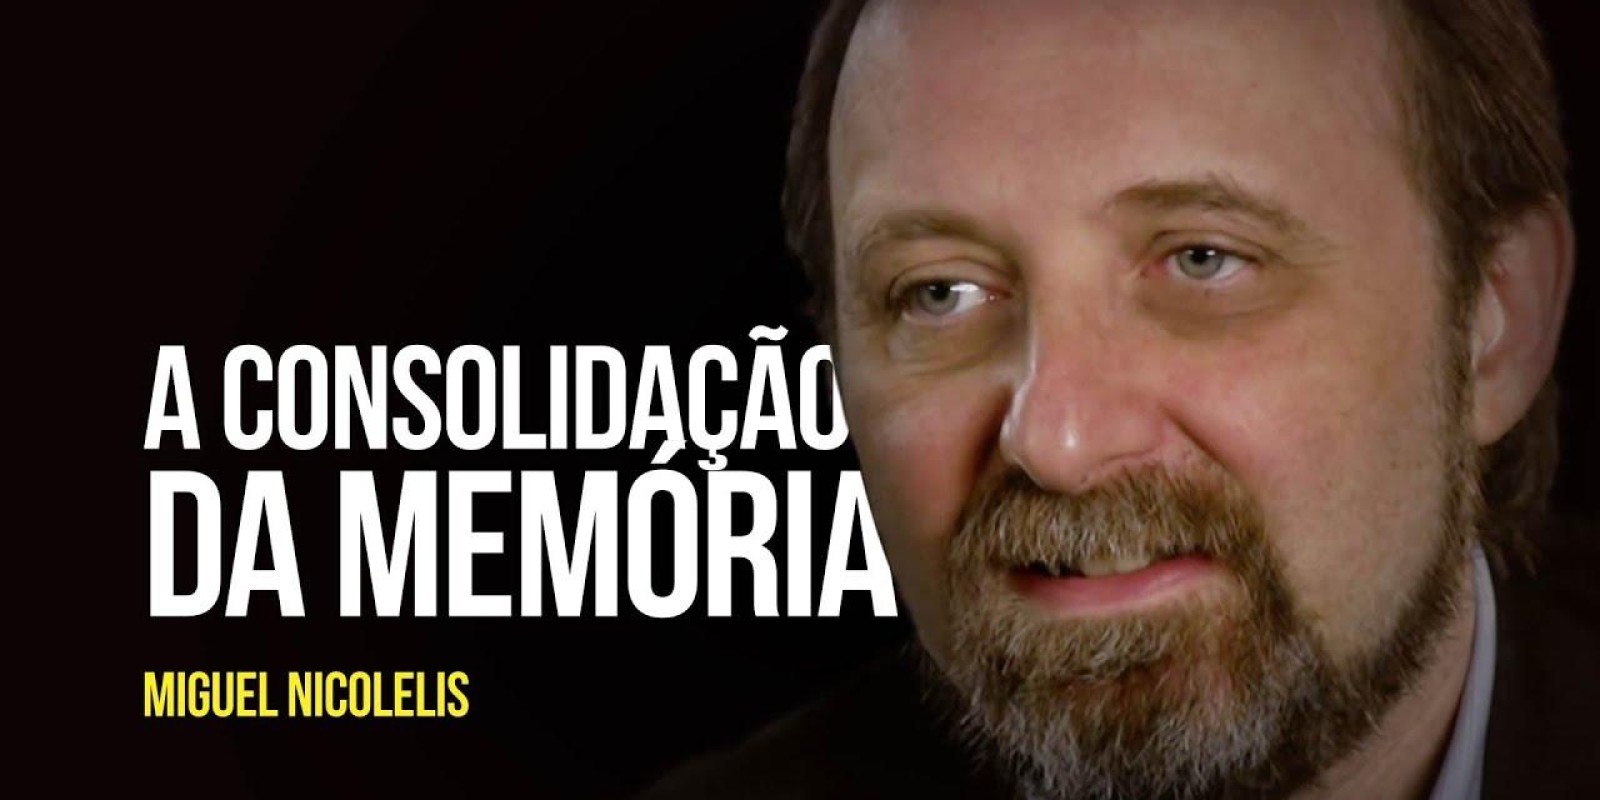 Miguel Nicolelis - A consolidação da memória